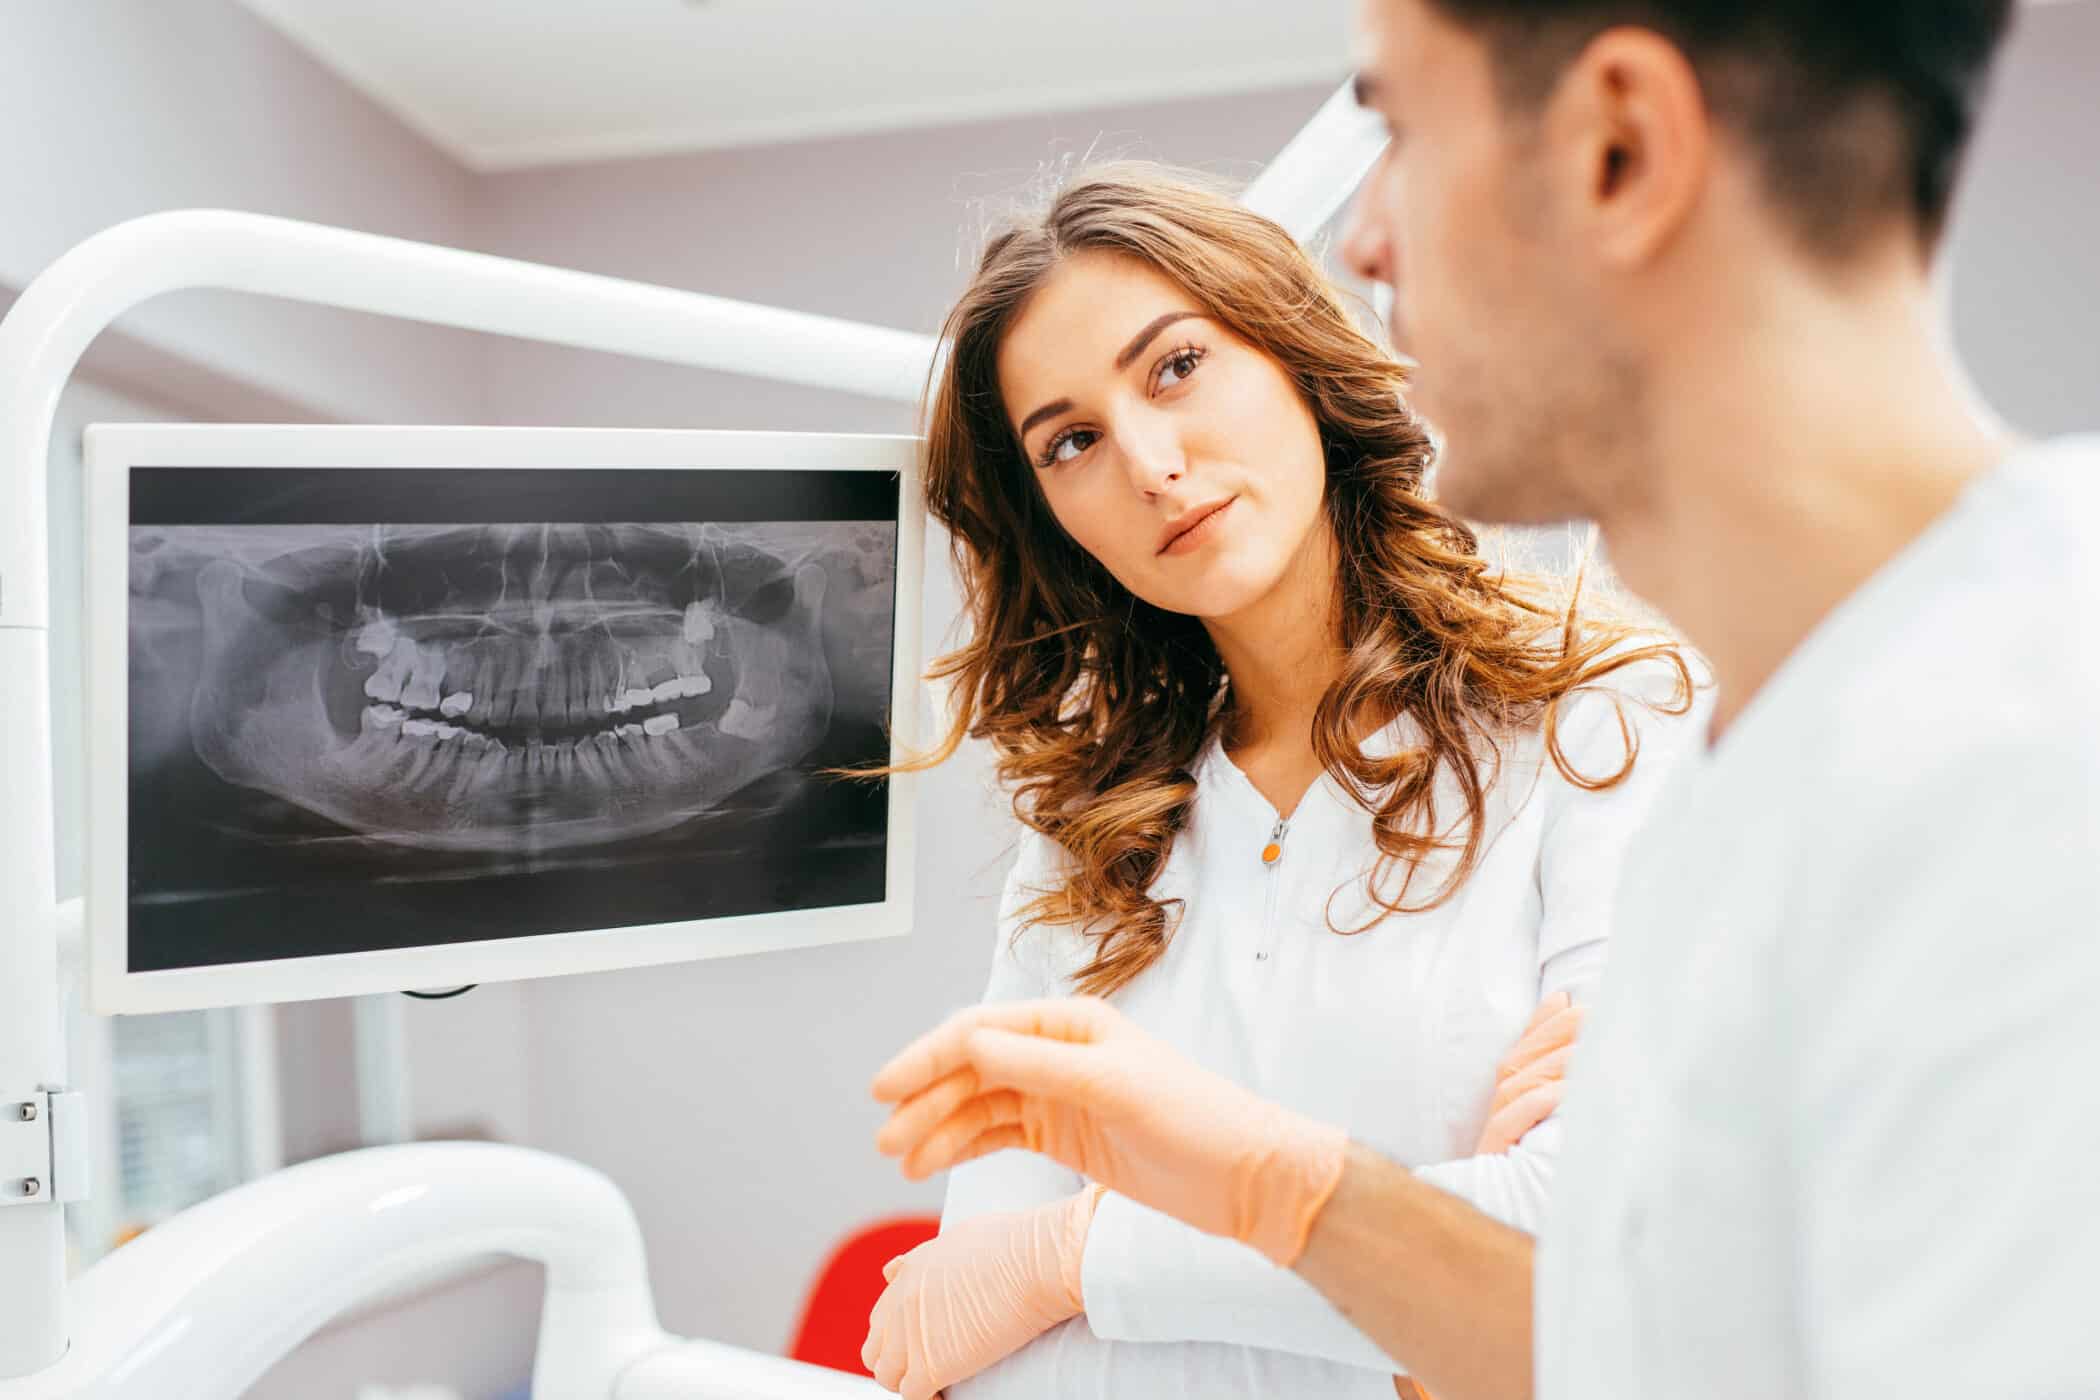 Dentist looking at a dental x-ray